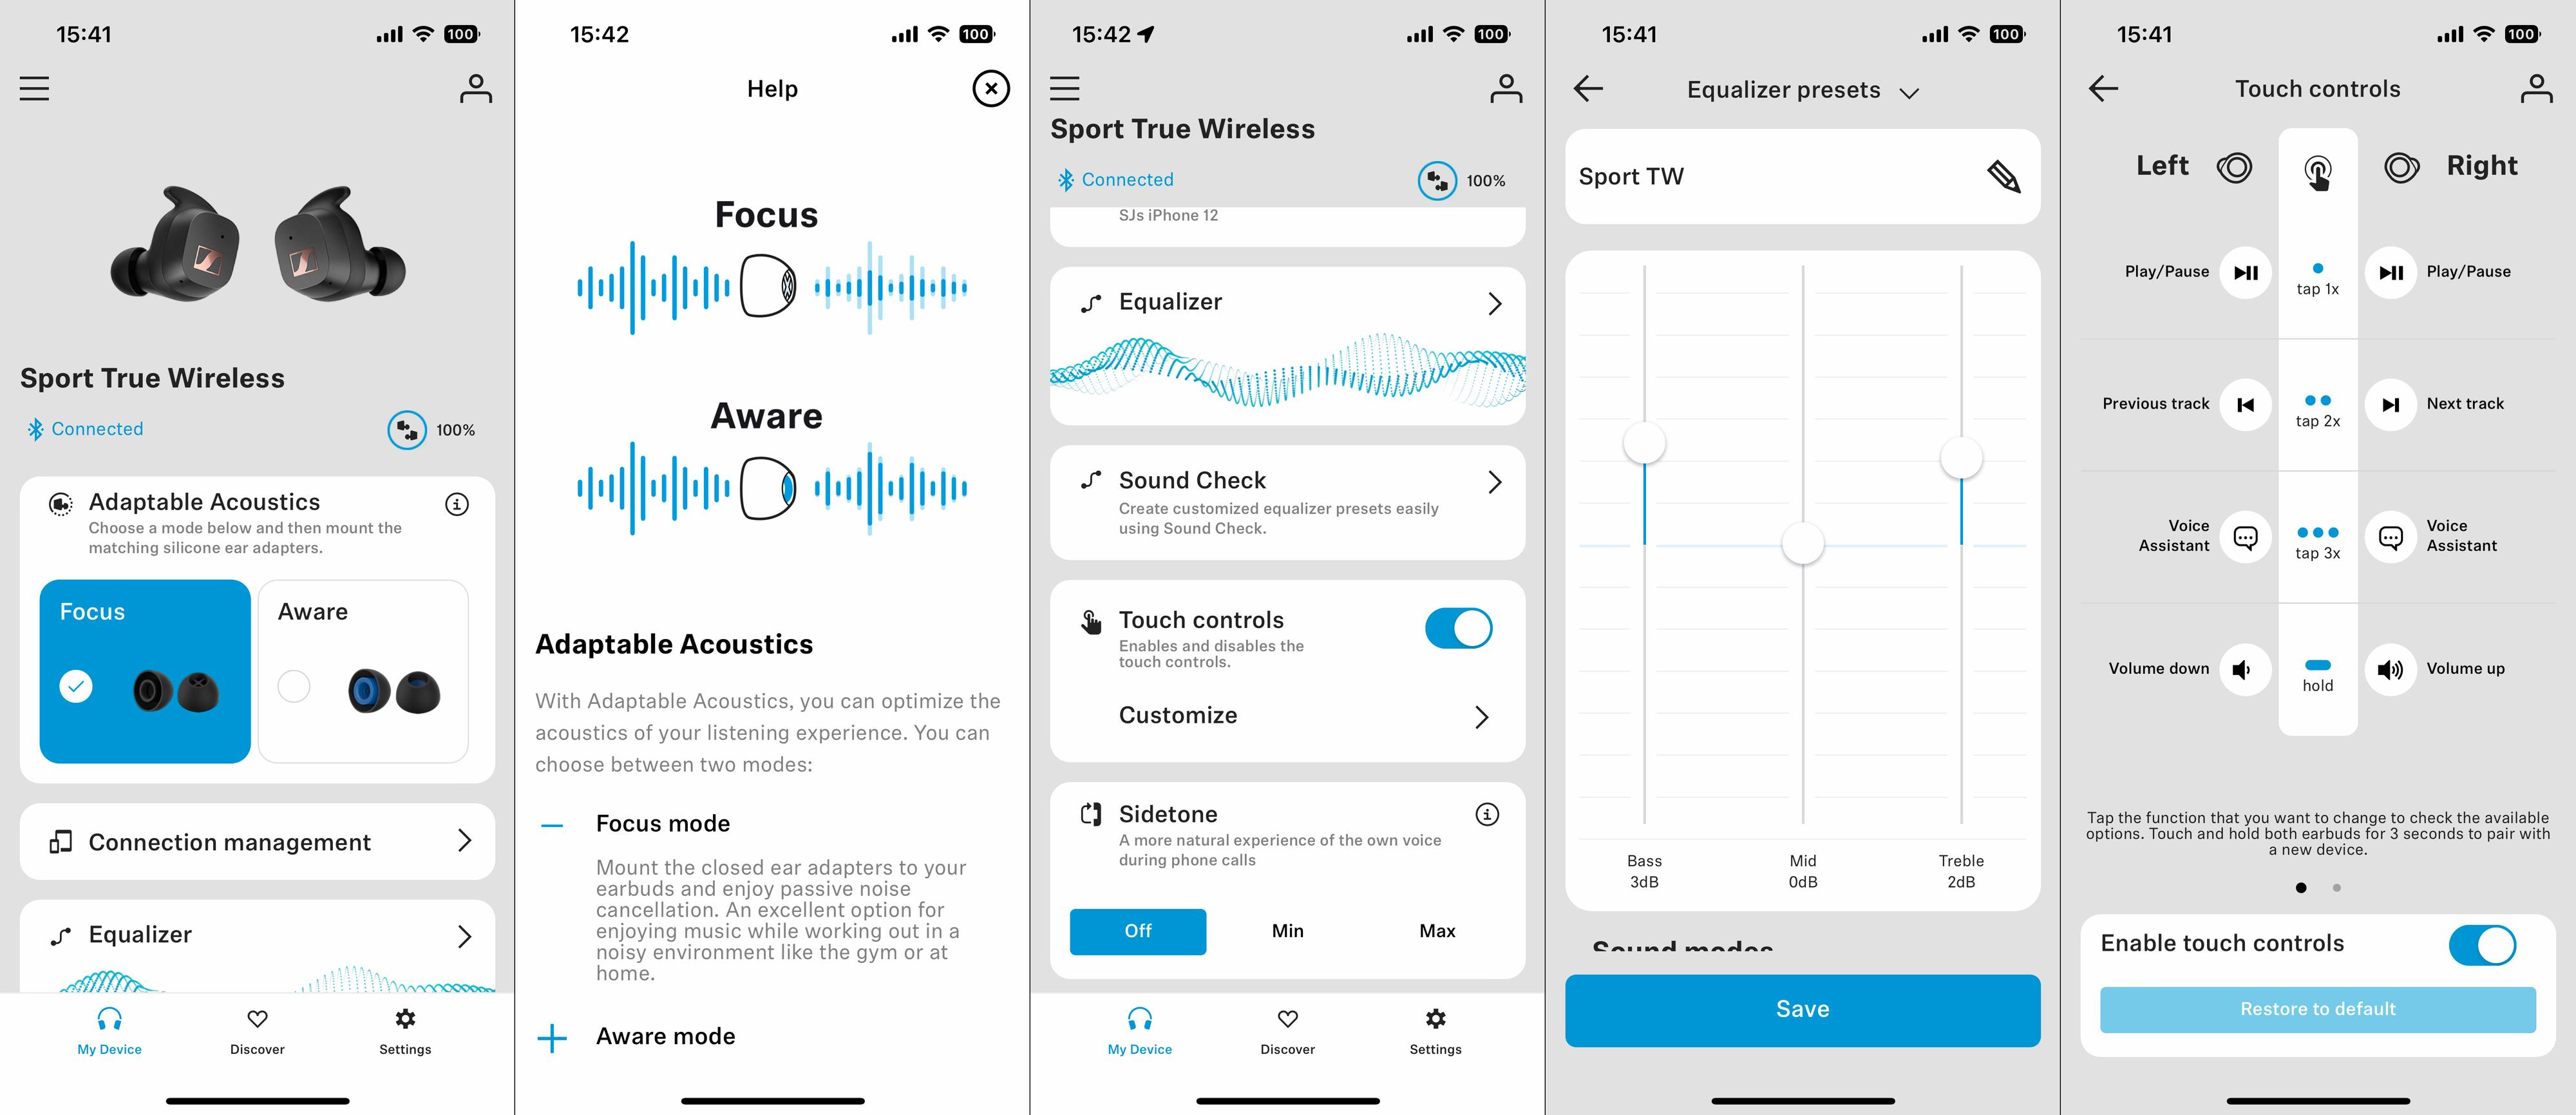 Sennheiser-appen byr som vanlig på gode muligheter til å tilpasse hvordan du kontrollerer hodetelefonene, for eksempel. 